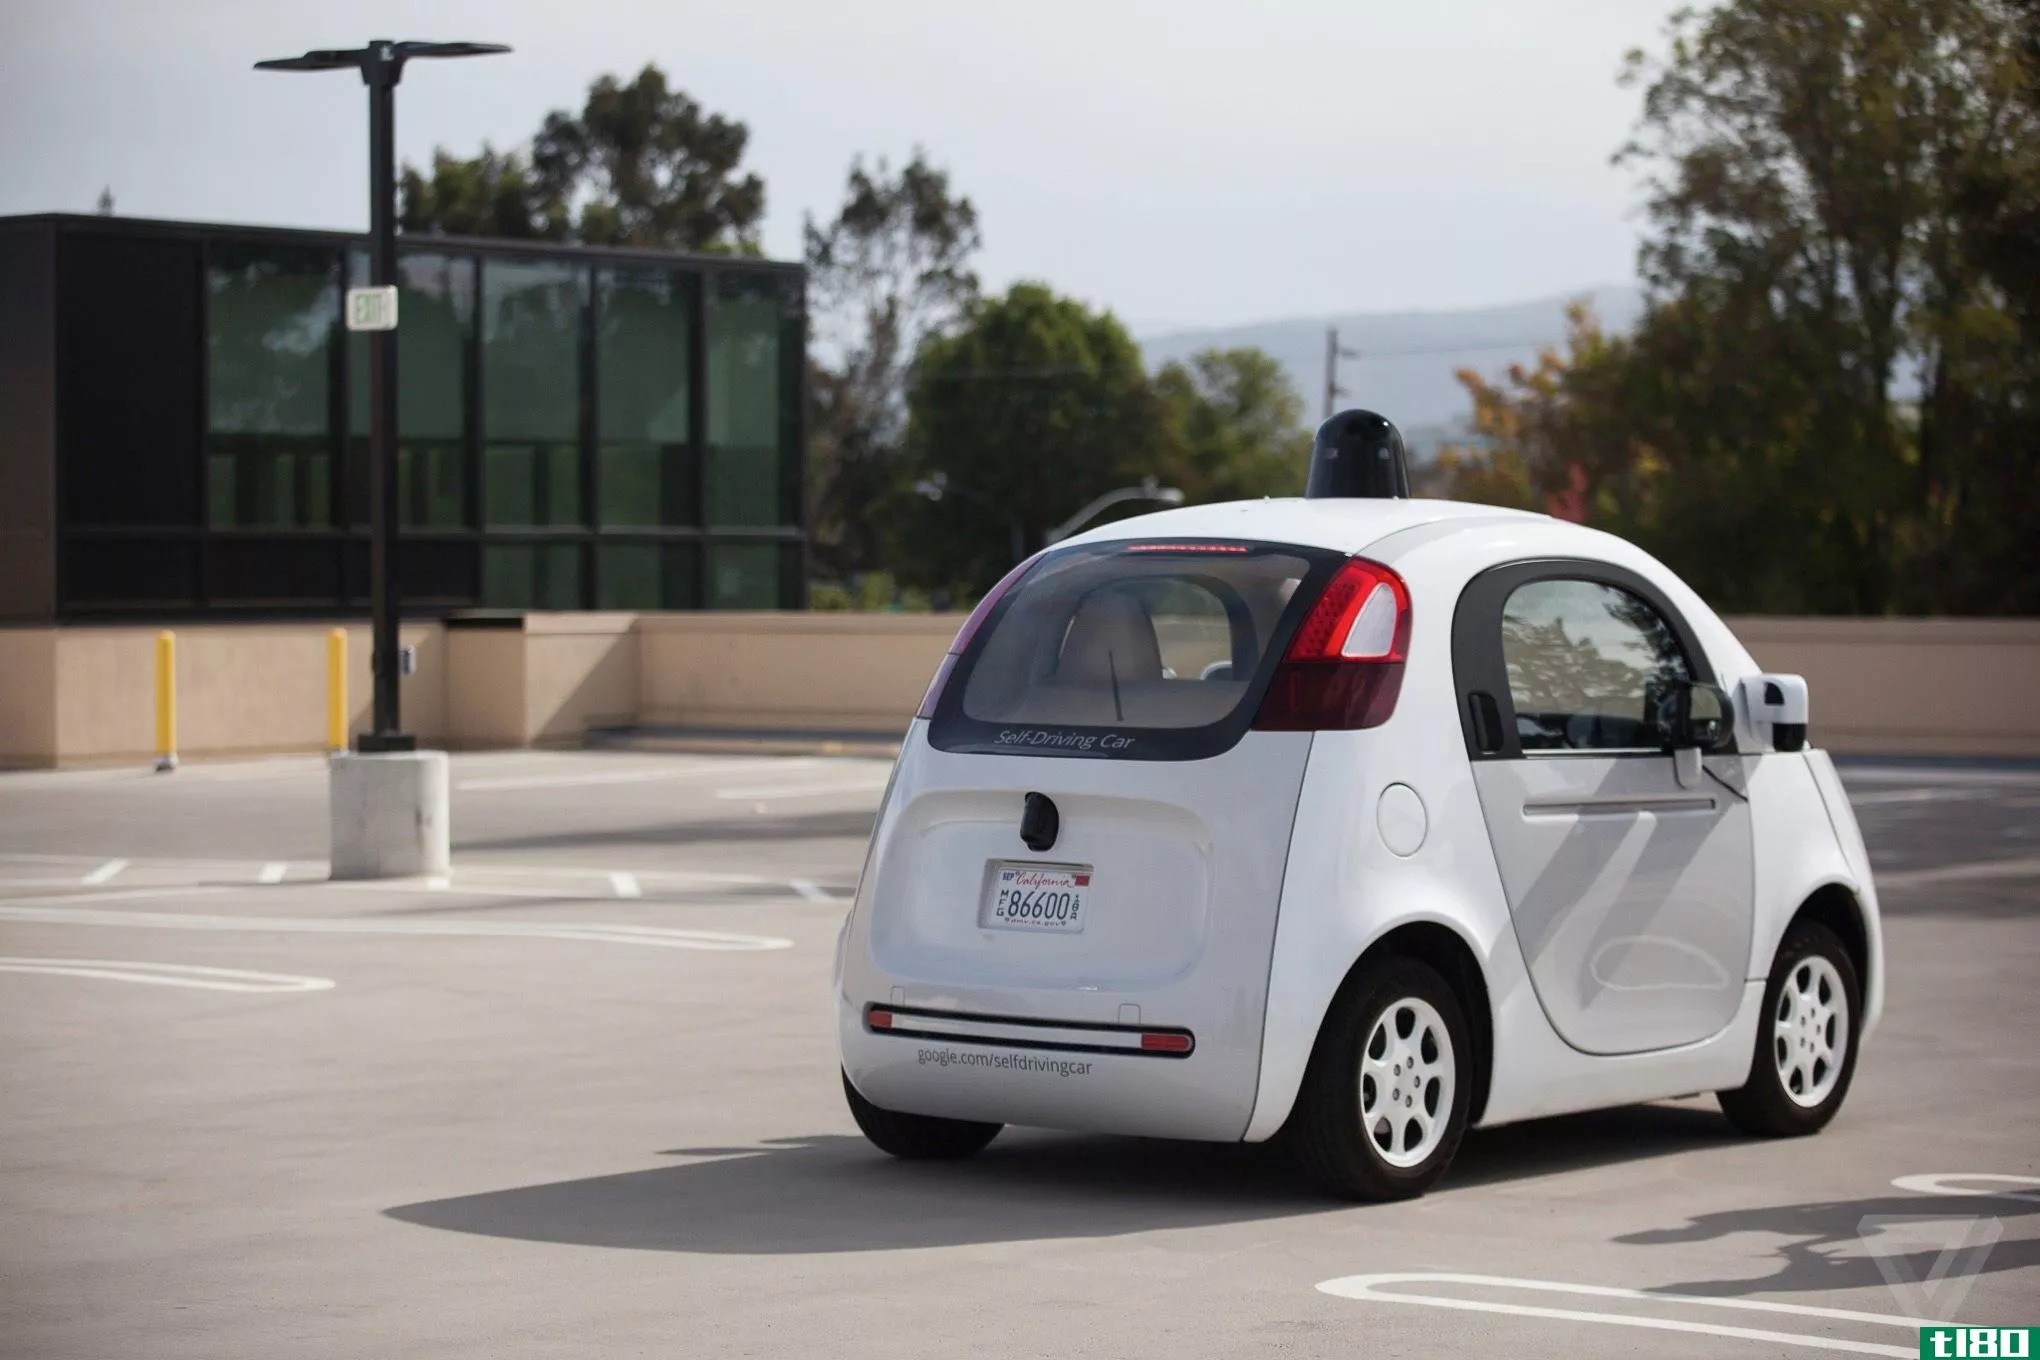 看起来谷歌想给自动驾驶汽车无线充电